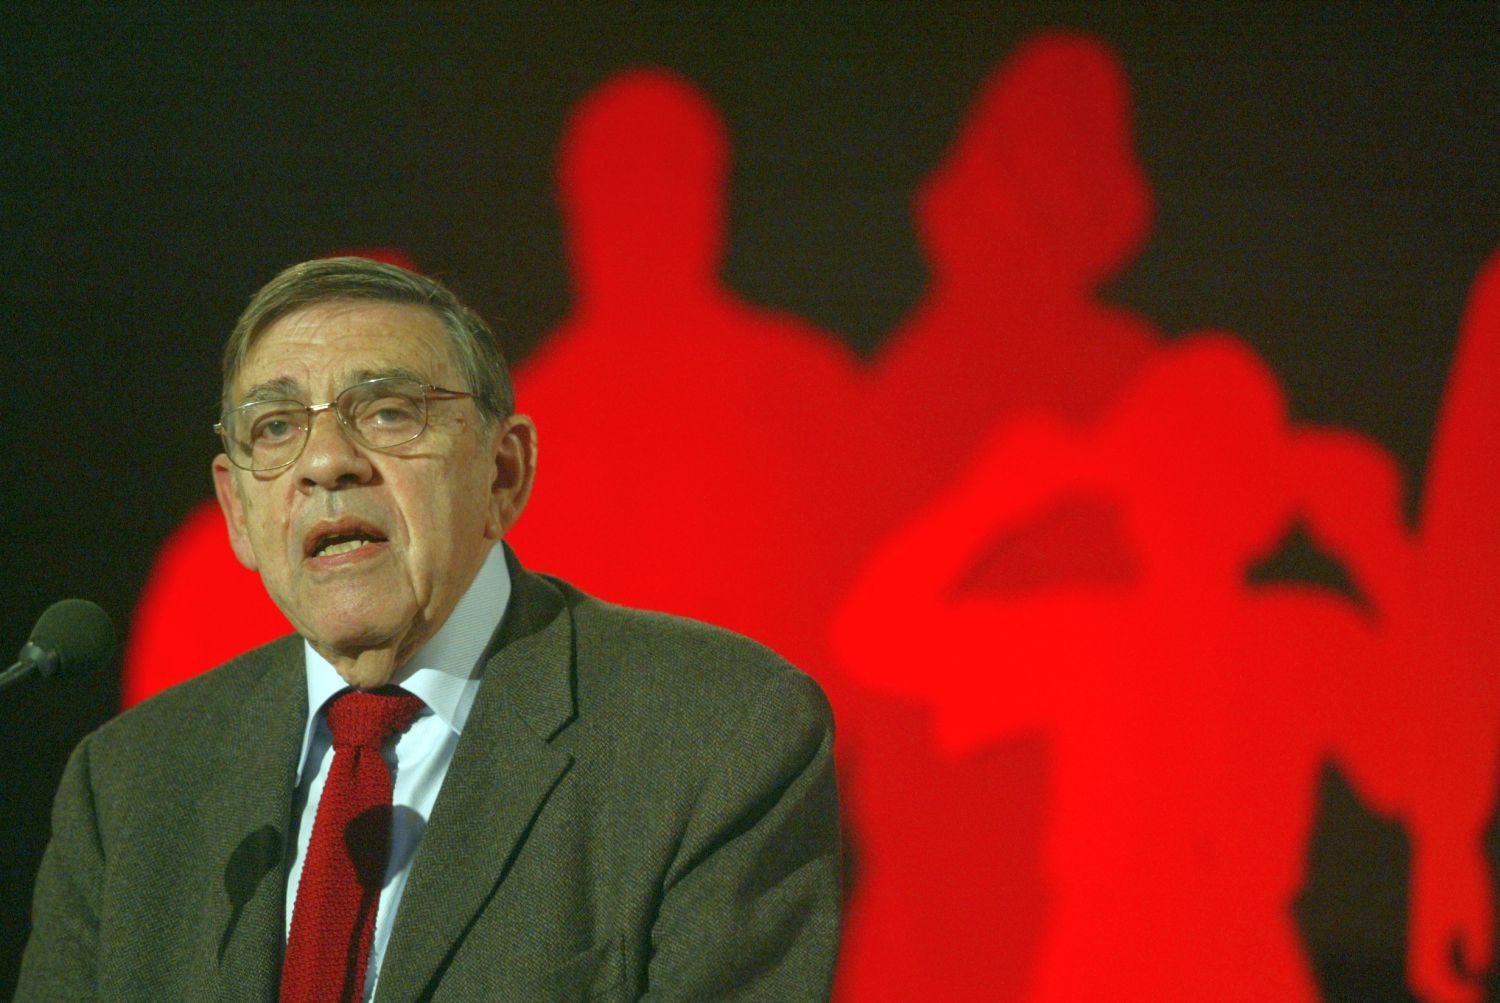 Thomas Schreiber 2006 őszén Budapesten, az 1956-os forradalom 50. évfordulója alkalmából rendezett konferencián az Olasz Intézetben